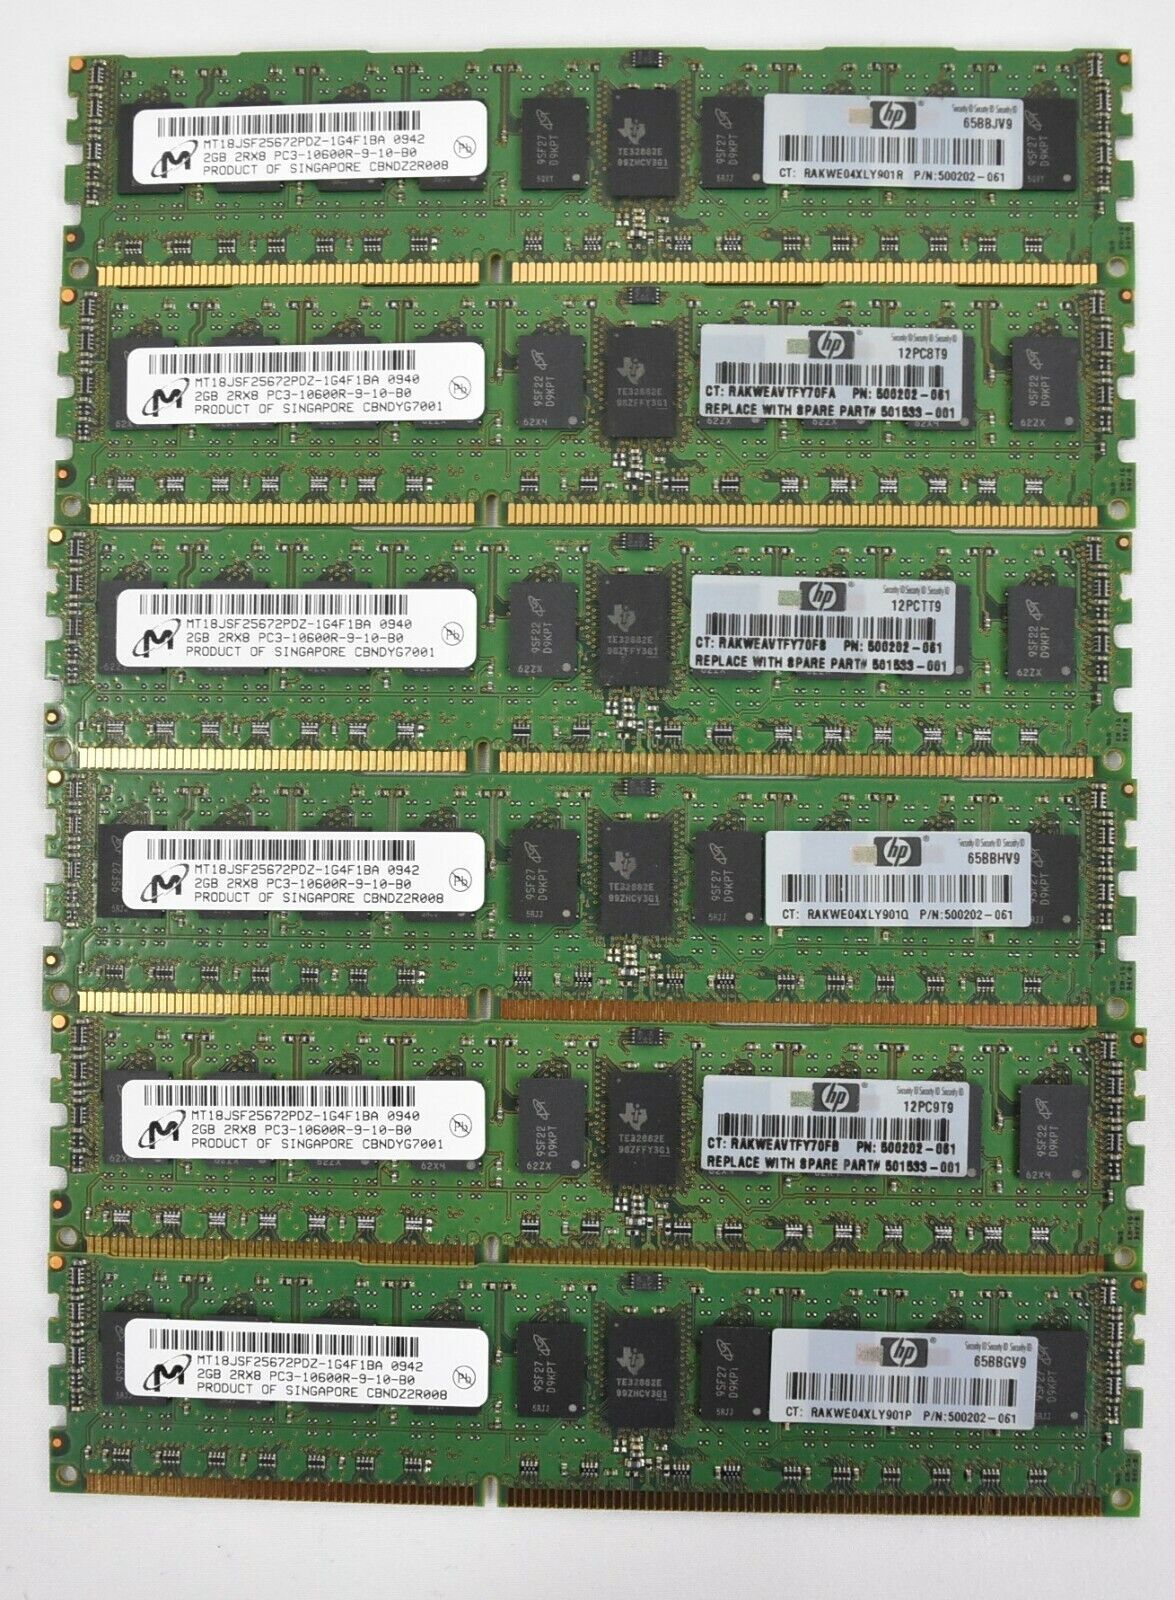 12GB Micron (6x2GB) PC3-10600R ECC SDRAM Server RAM Memory 500202-061